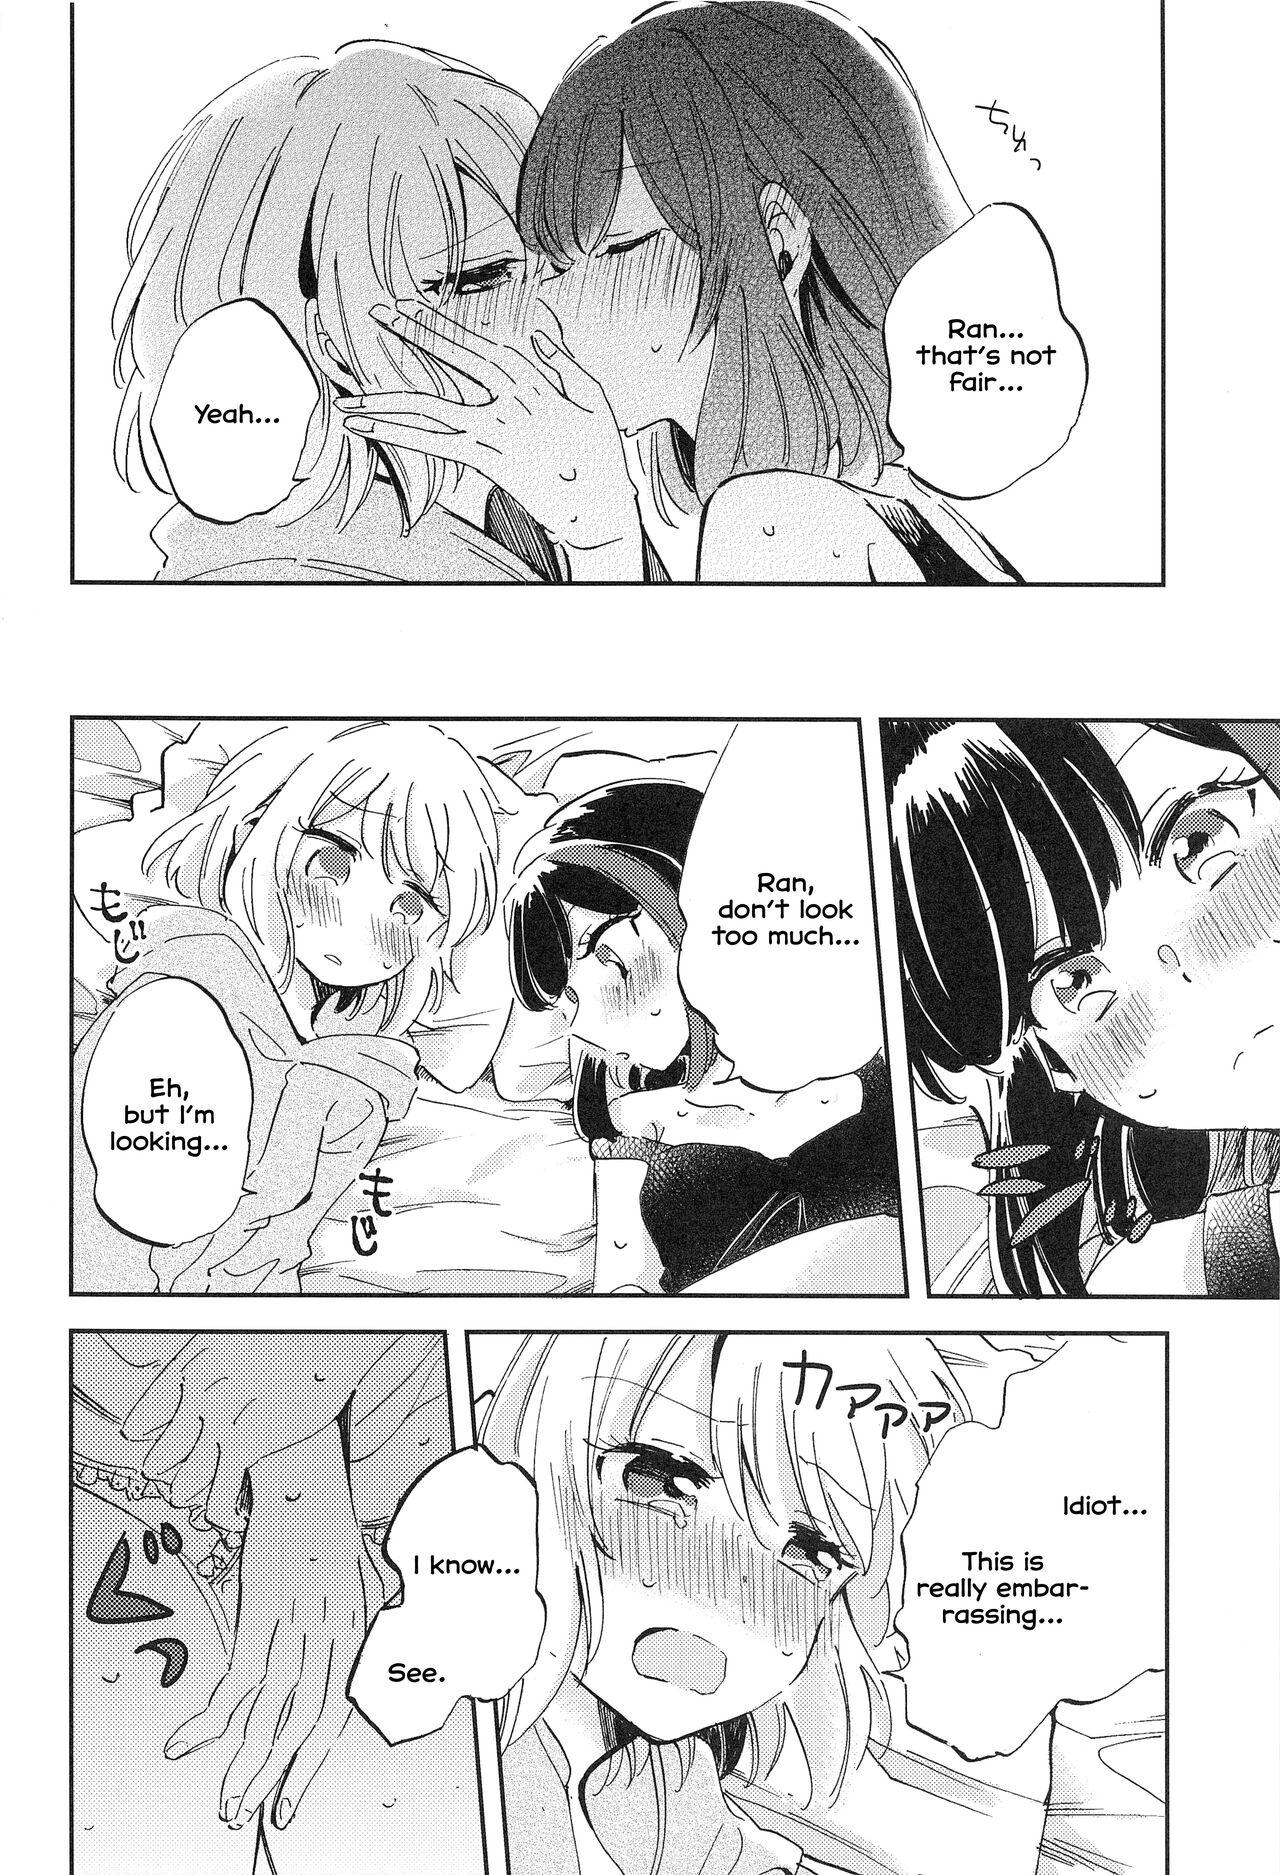 Romance Futari de Iru kara Dekiru Koto - Bang dream Rimjob - Page 9